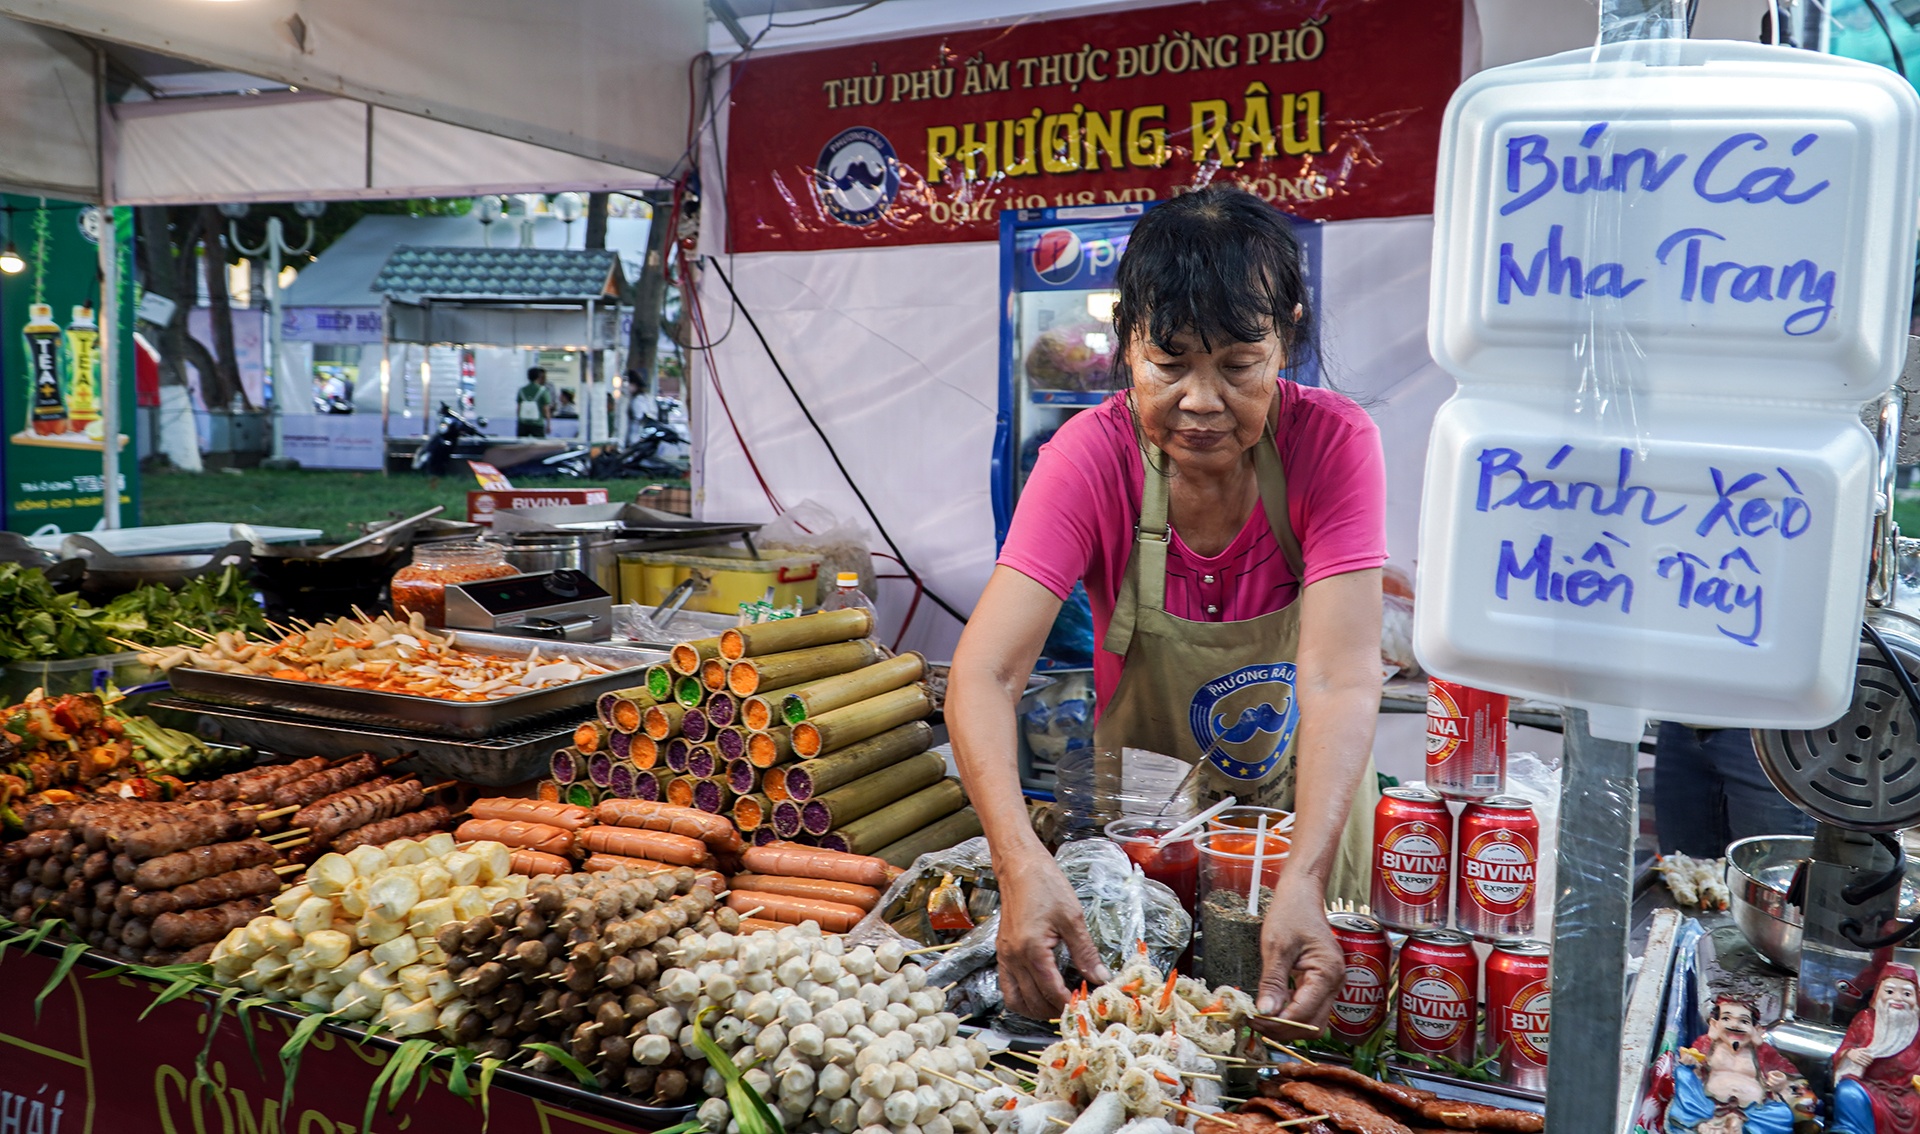 Bò một nắng Gia Lai, cơm lam tại lễ hội ẩm thực ở Nha Trang - ảnh 1